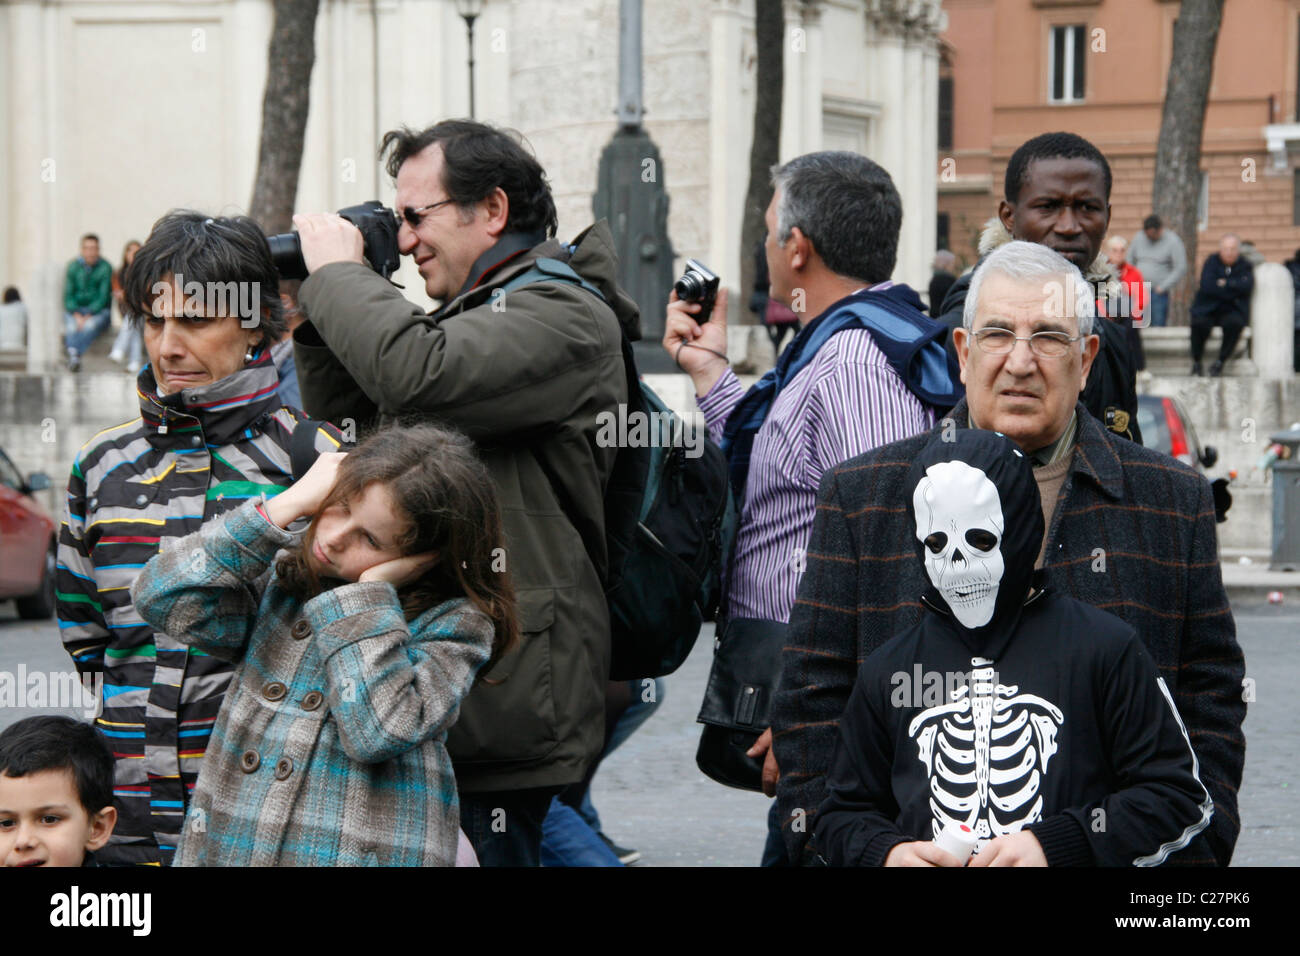 carnival procession celebrations in piazza venezia square in rome italy Stock Photo